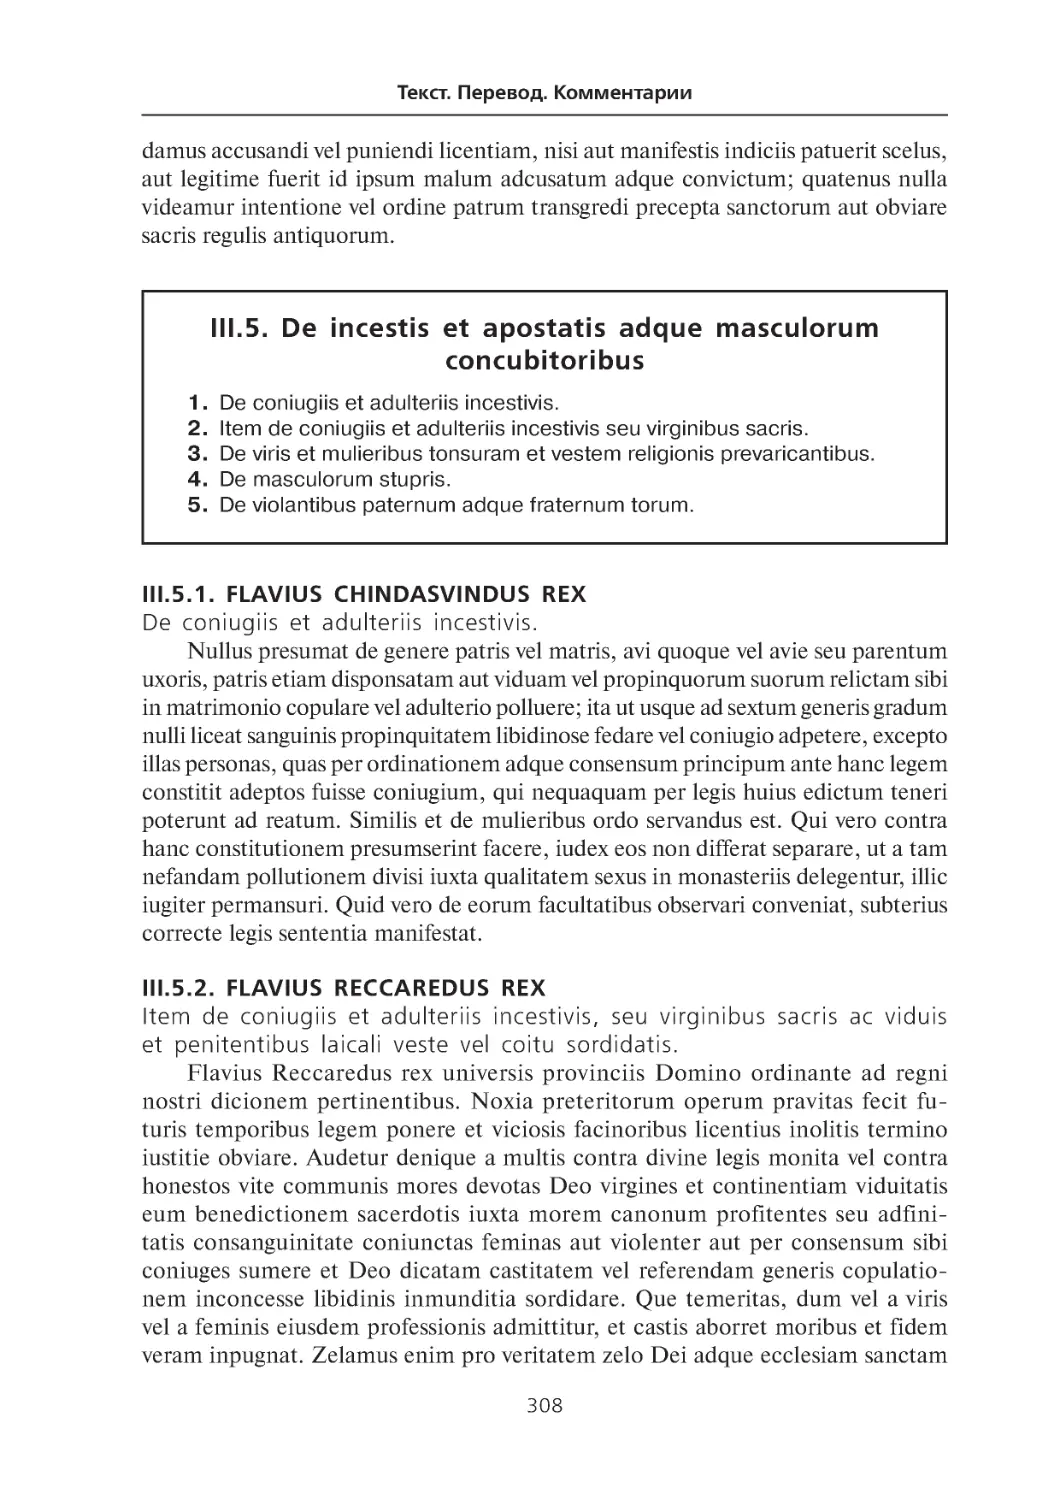 III.5. De incestis et apostatis adque masculorum concubitoribus